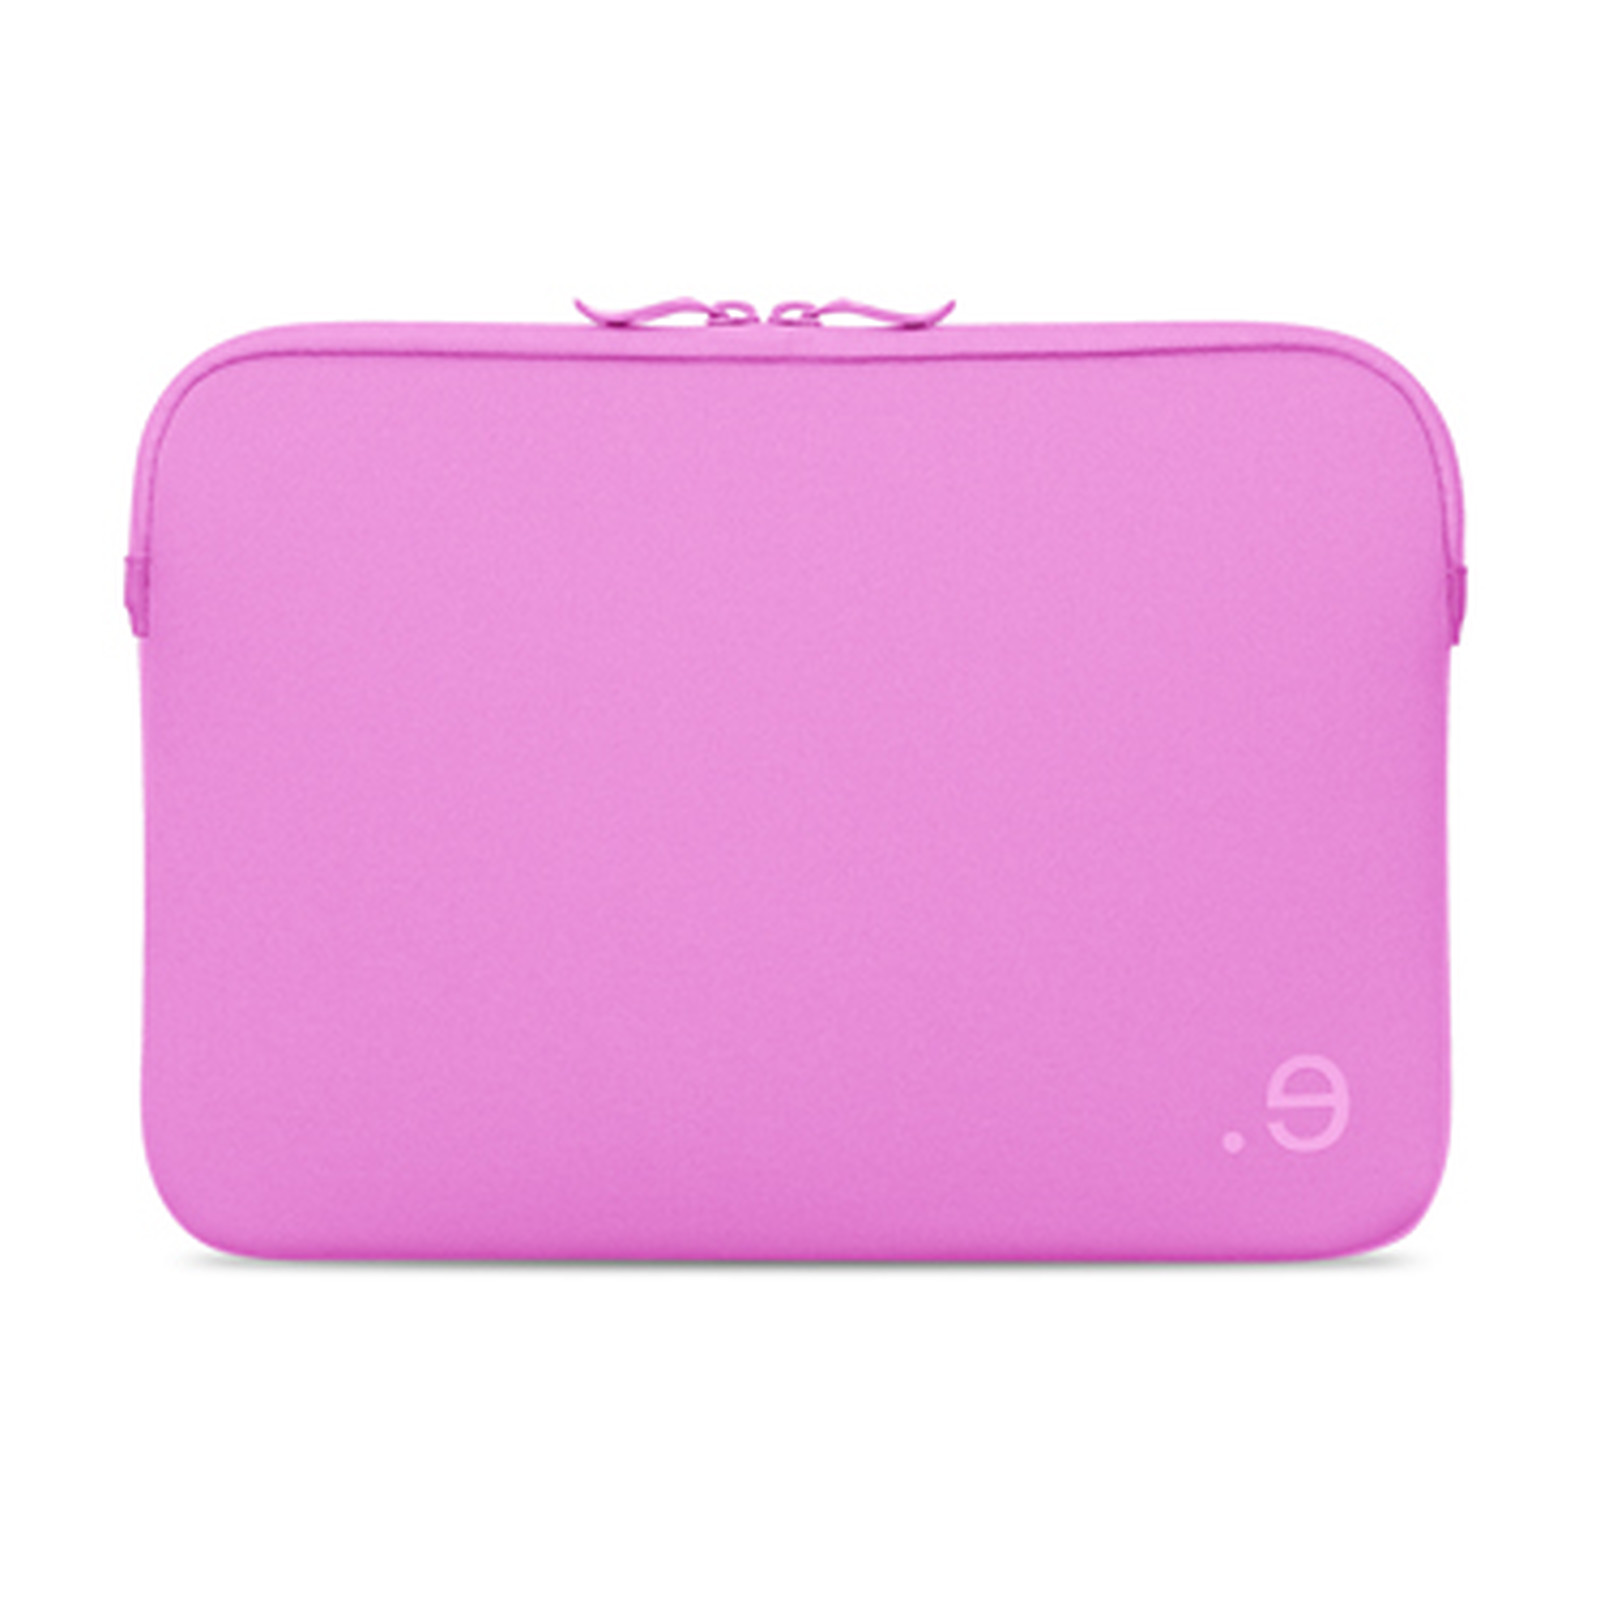 BE.EZ Housse LA robe One Macbook Pro Retina 13 Bubble Pink - Accessoires Apple be.ez